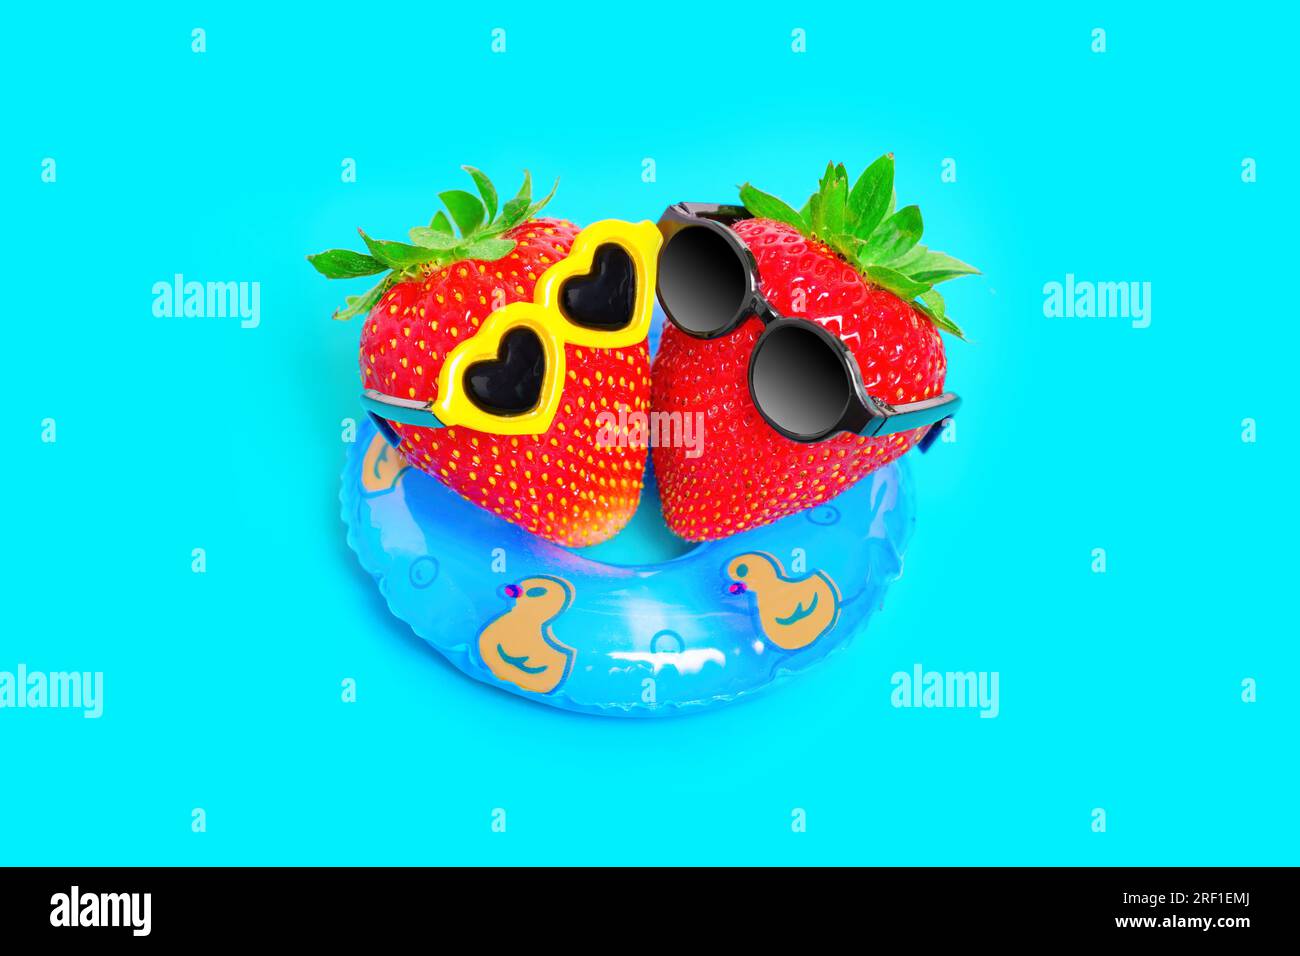 Vista de arriba hacia abajo de dos fresas, con gafas de sol elegantes, flotando en un flotador inflable. Vibrante concepto de escapada de verano de ensueño. Foto de stock